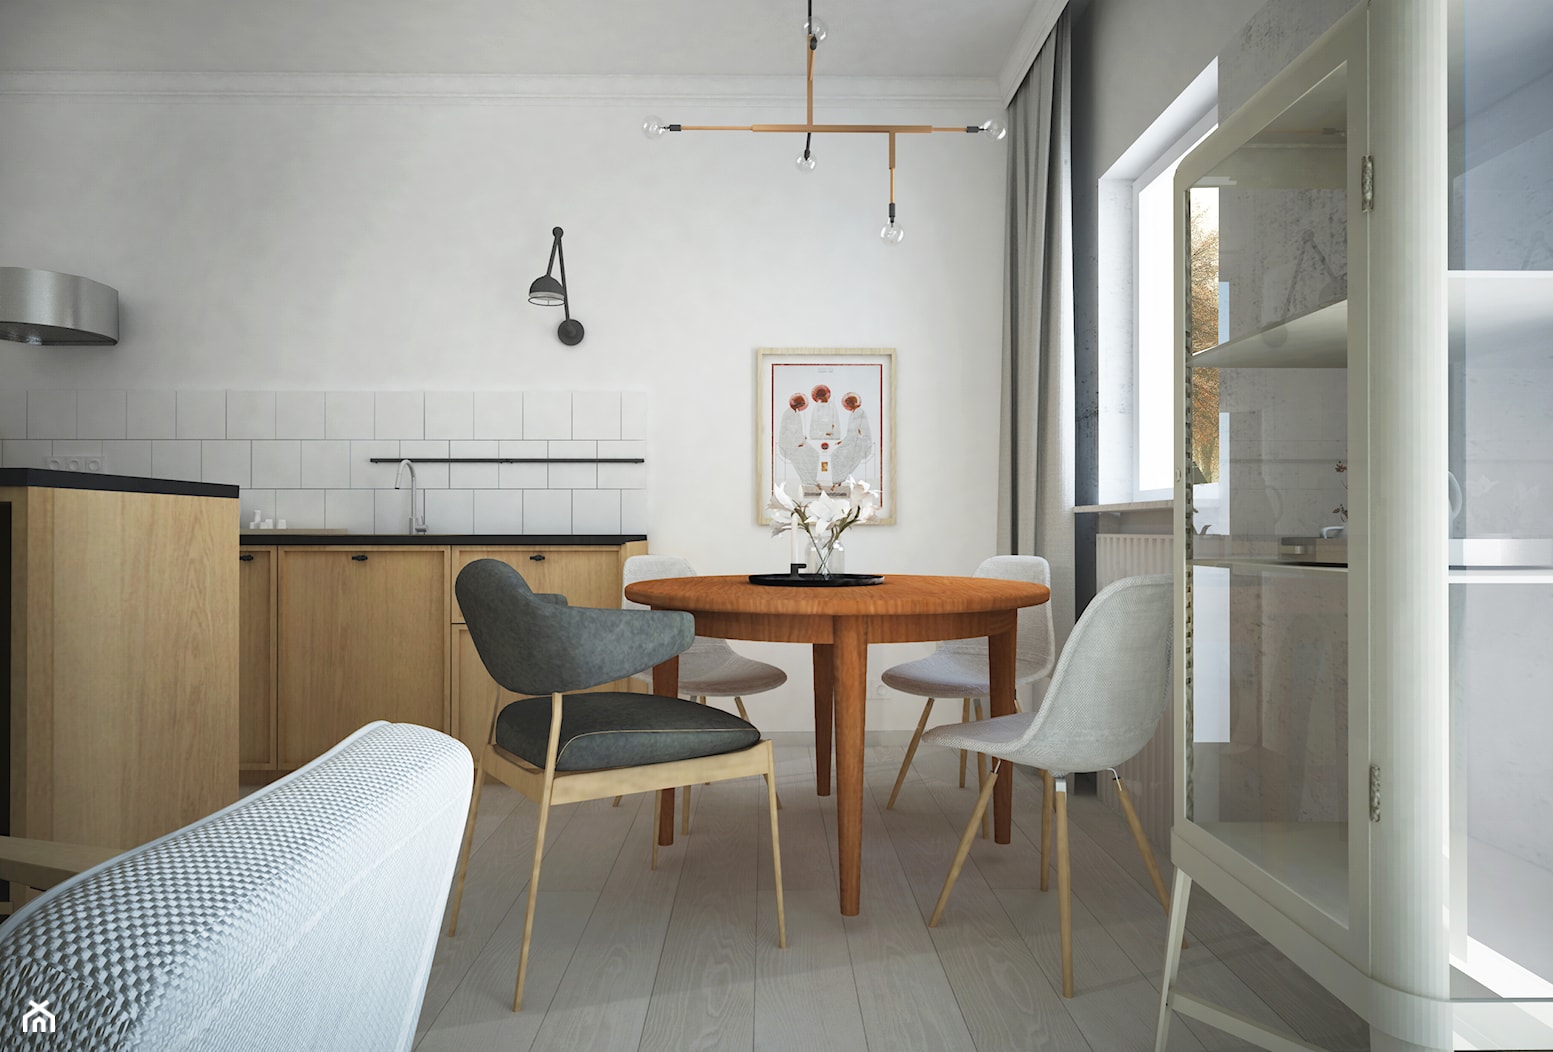 Projekt mieszkanie - skandynawskie smaki - Mała biała jadalnia w kuchni, styl skandynawski - zdjęcie od HOME AND WOOD - Homebook